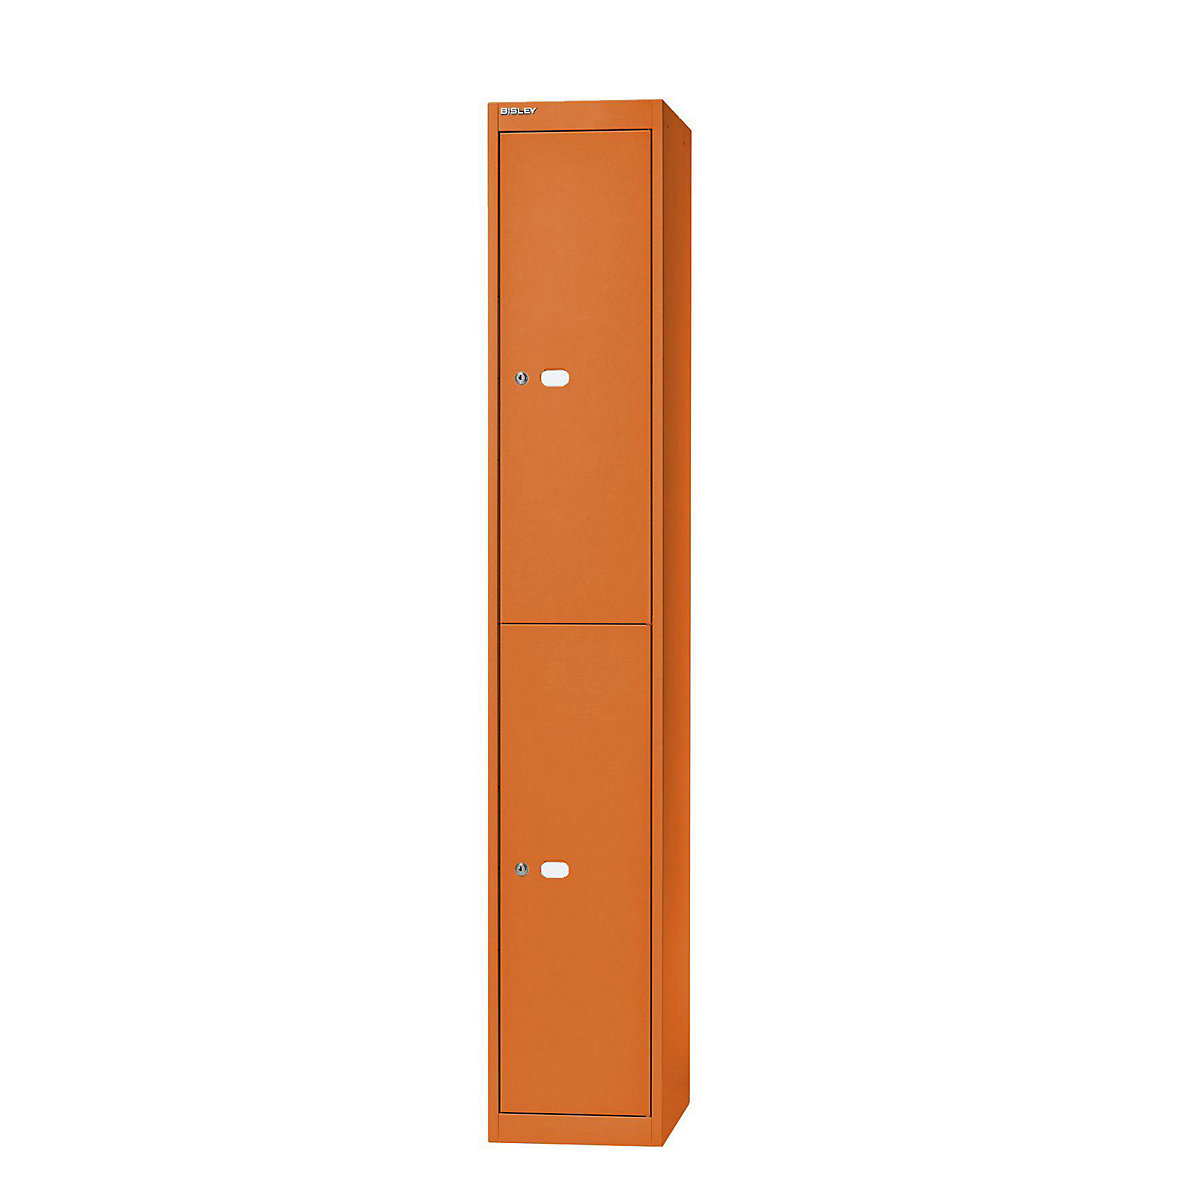 BISLEY OFFICE Garderobensystem, Tiefe 457 mm, 2 Fächer mit je 1 Kleiderhaken, orange